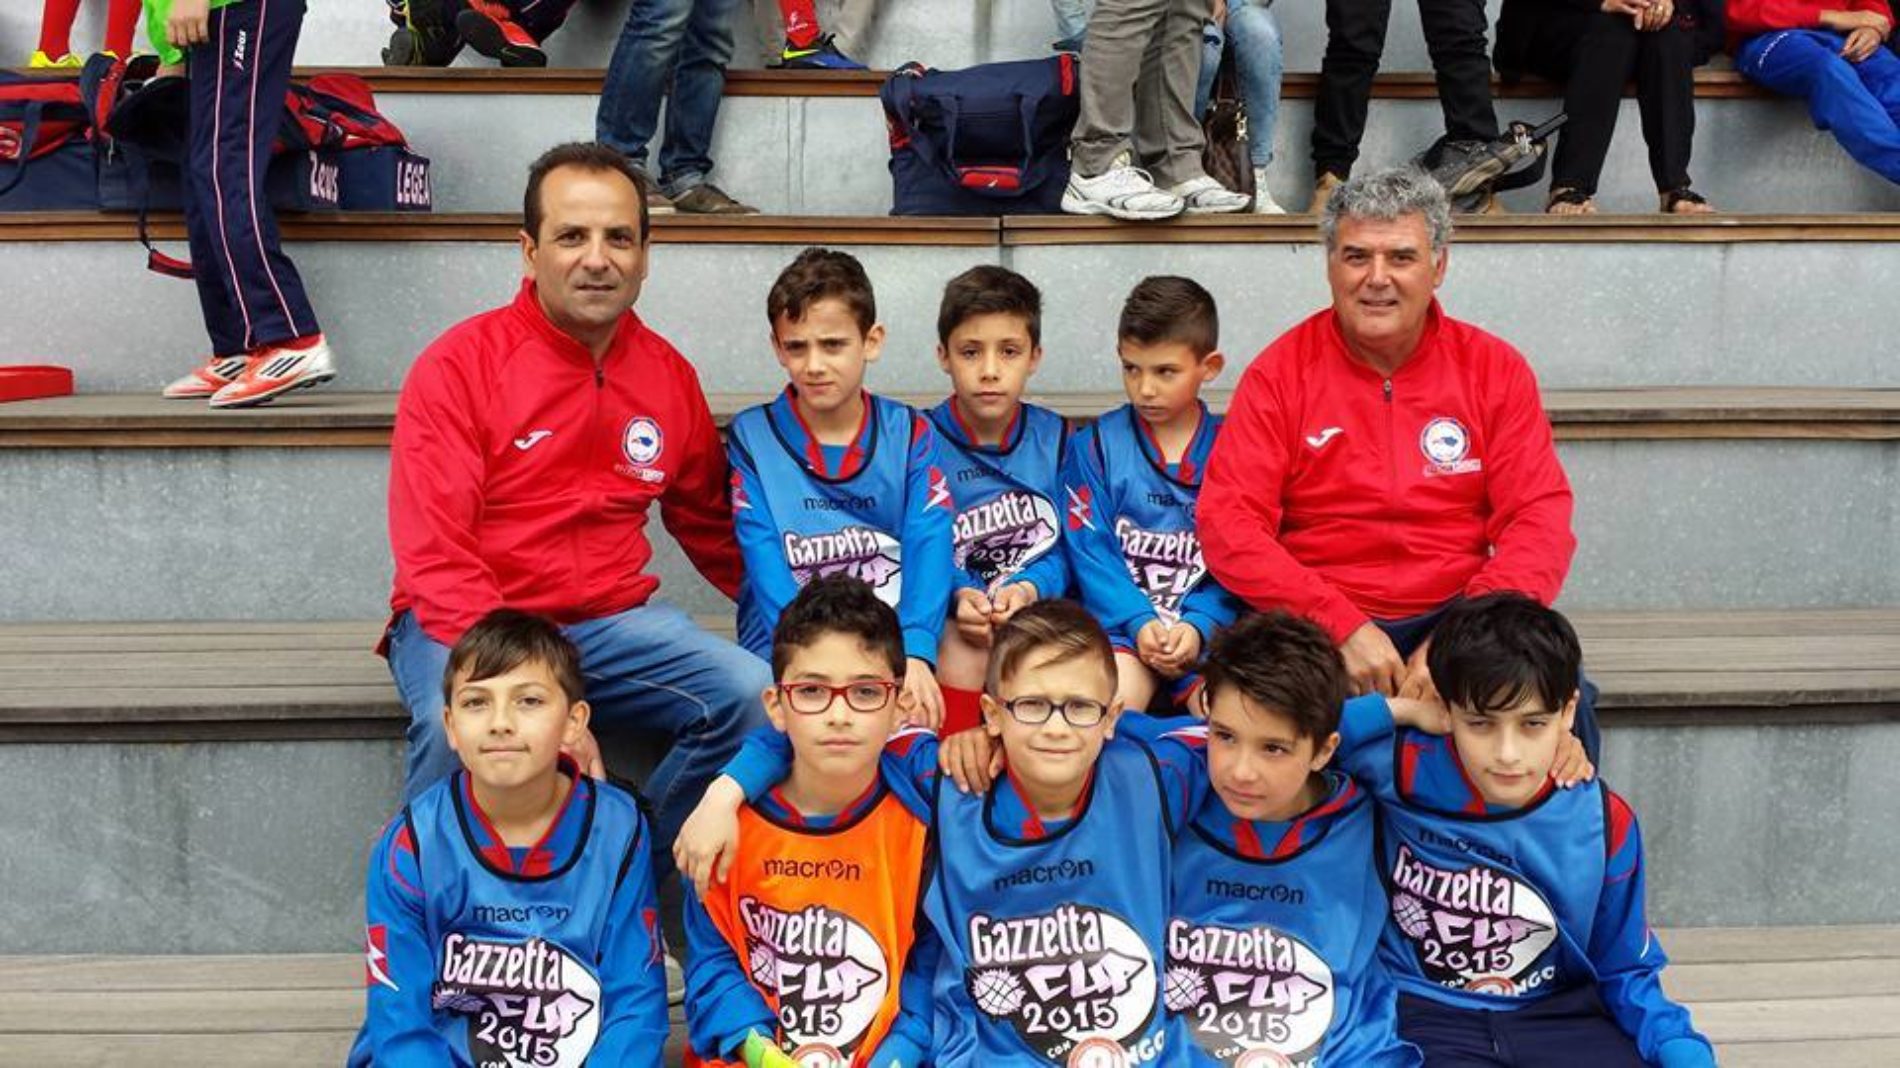 Barrese (pulcini ed esordienti) eliminati con onore al torneo regionale “Gazzetta Cup” di Catania